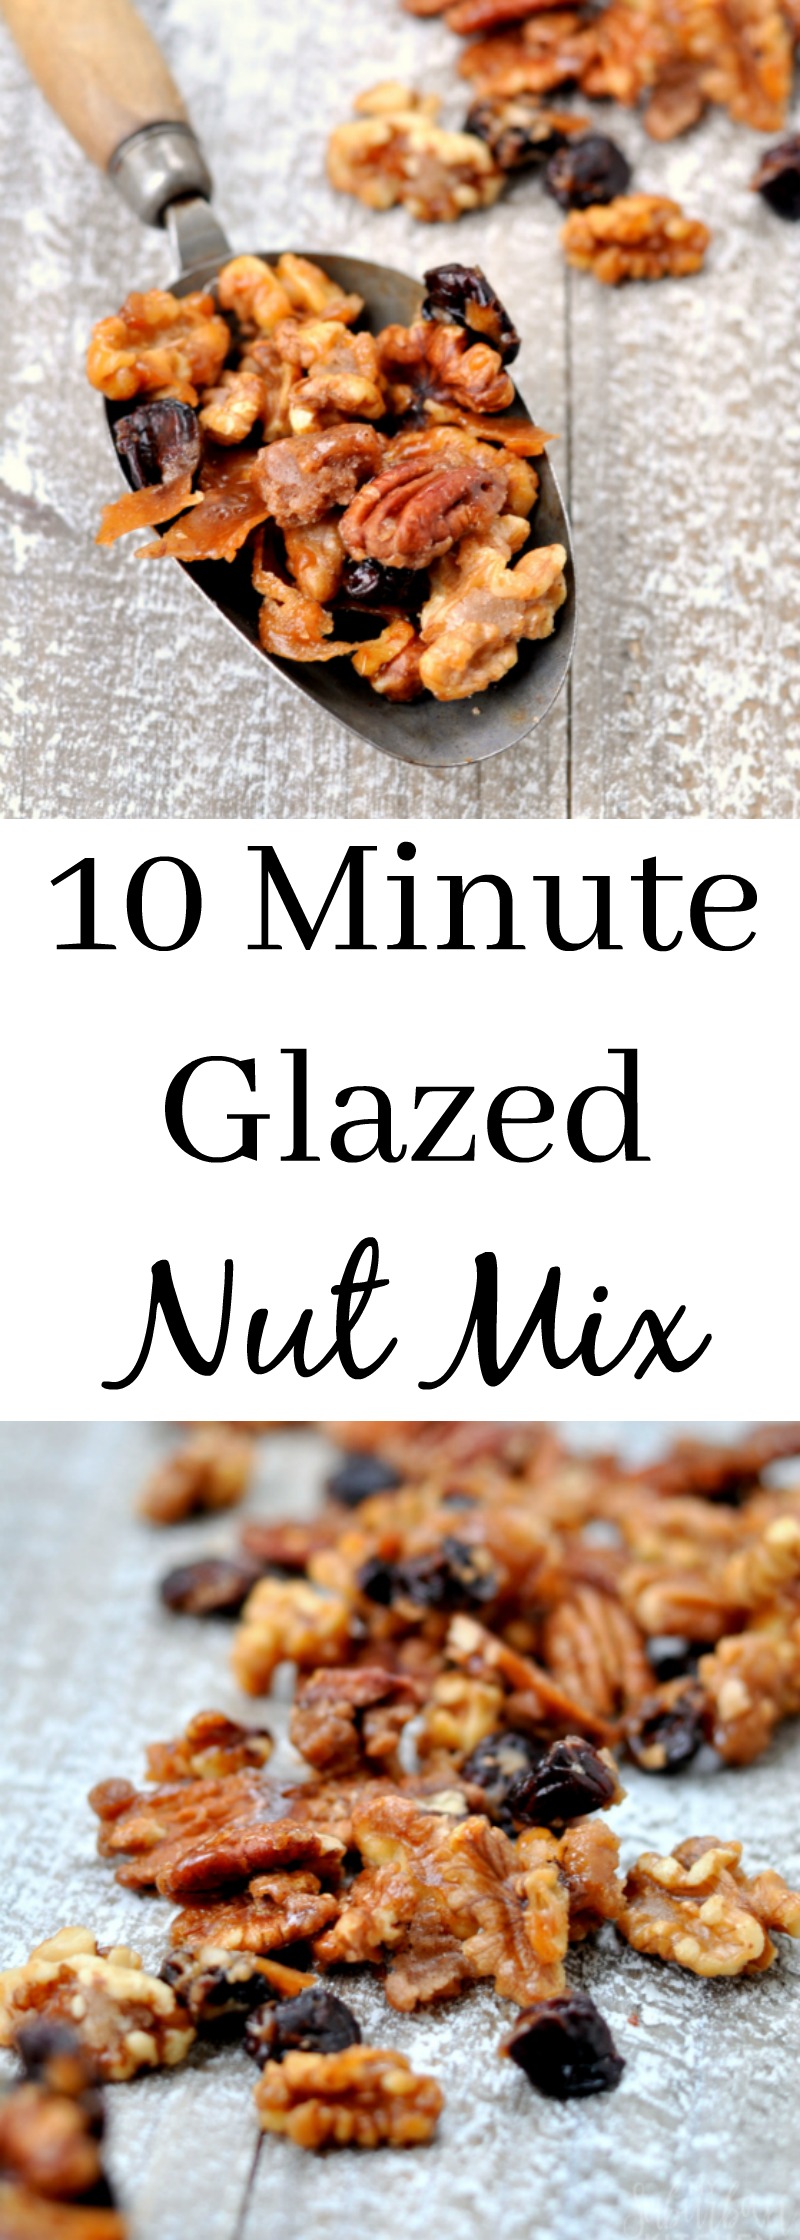 10 Minute Glazed Nut Mix